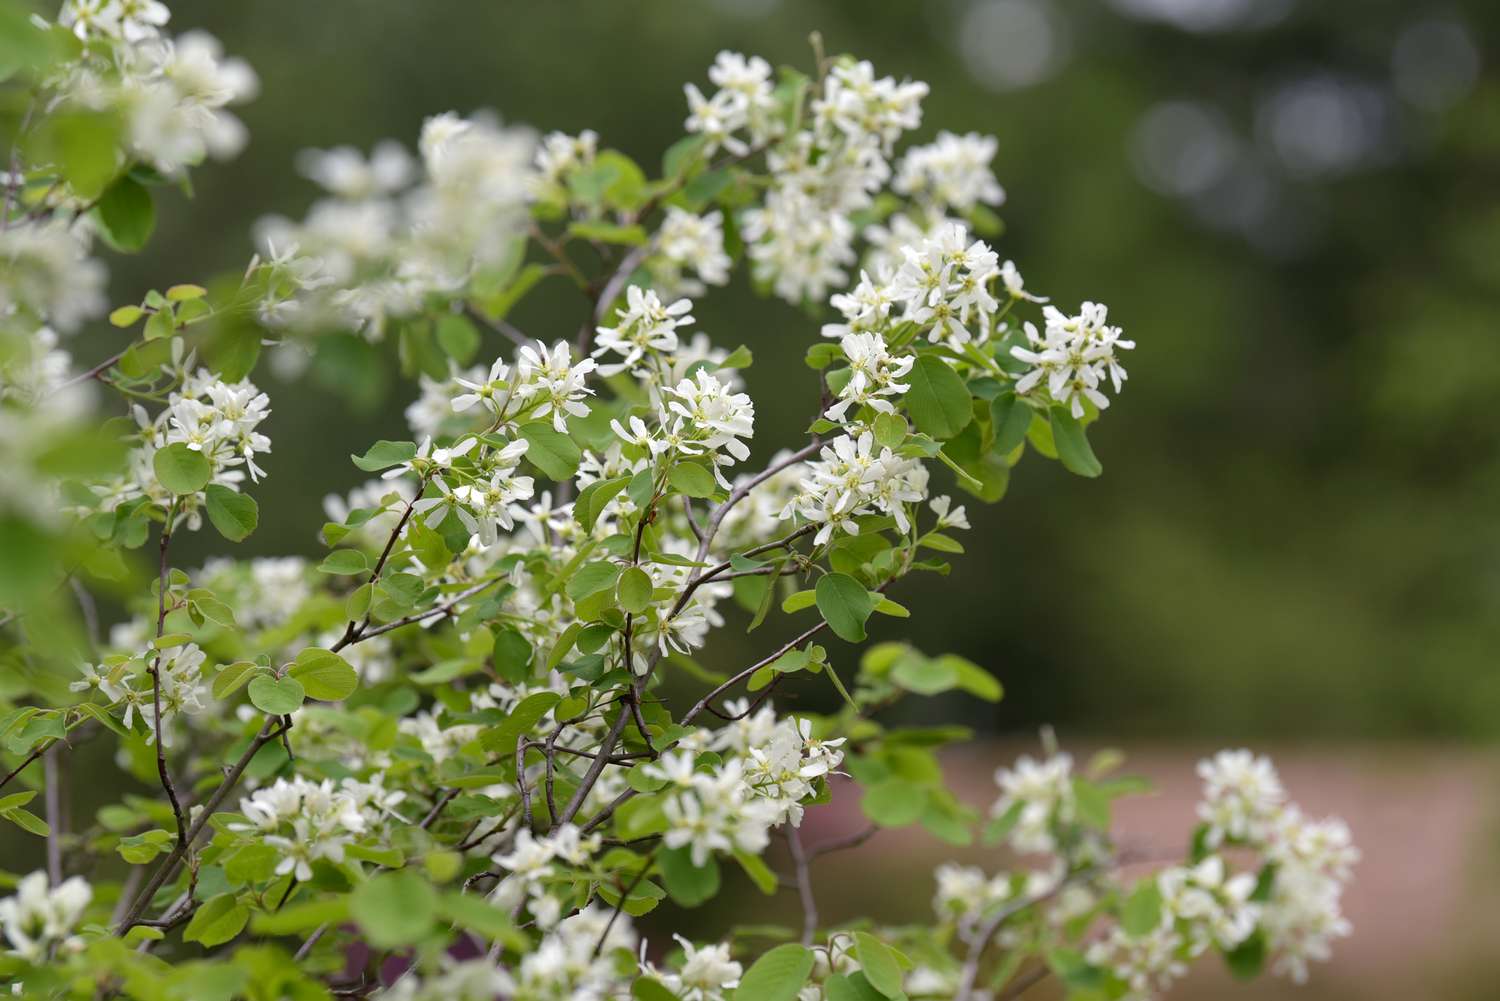 Saskatoon Serviceberry Baumzweige mit kleinen weißen Blüten in Nahaufnahme